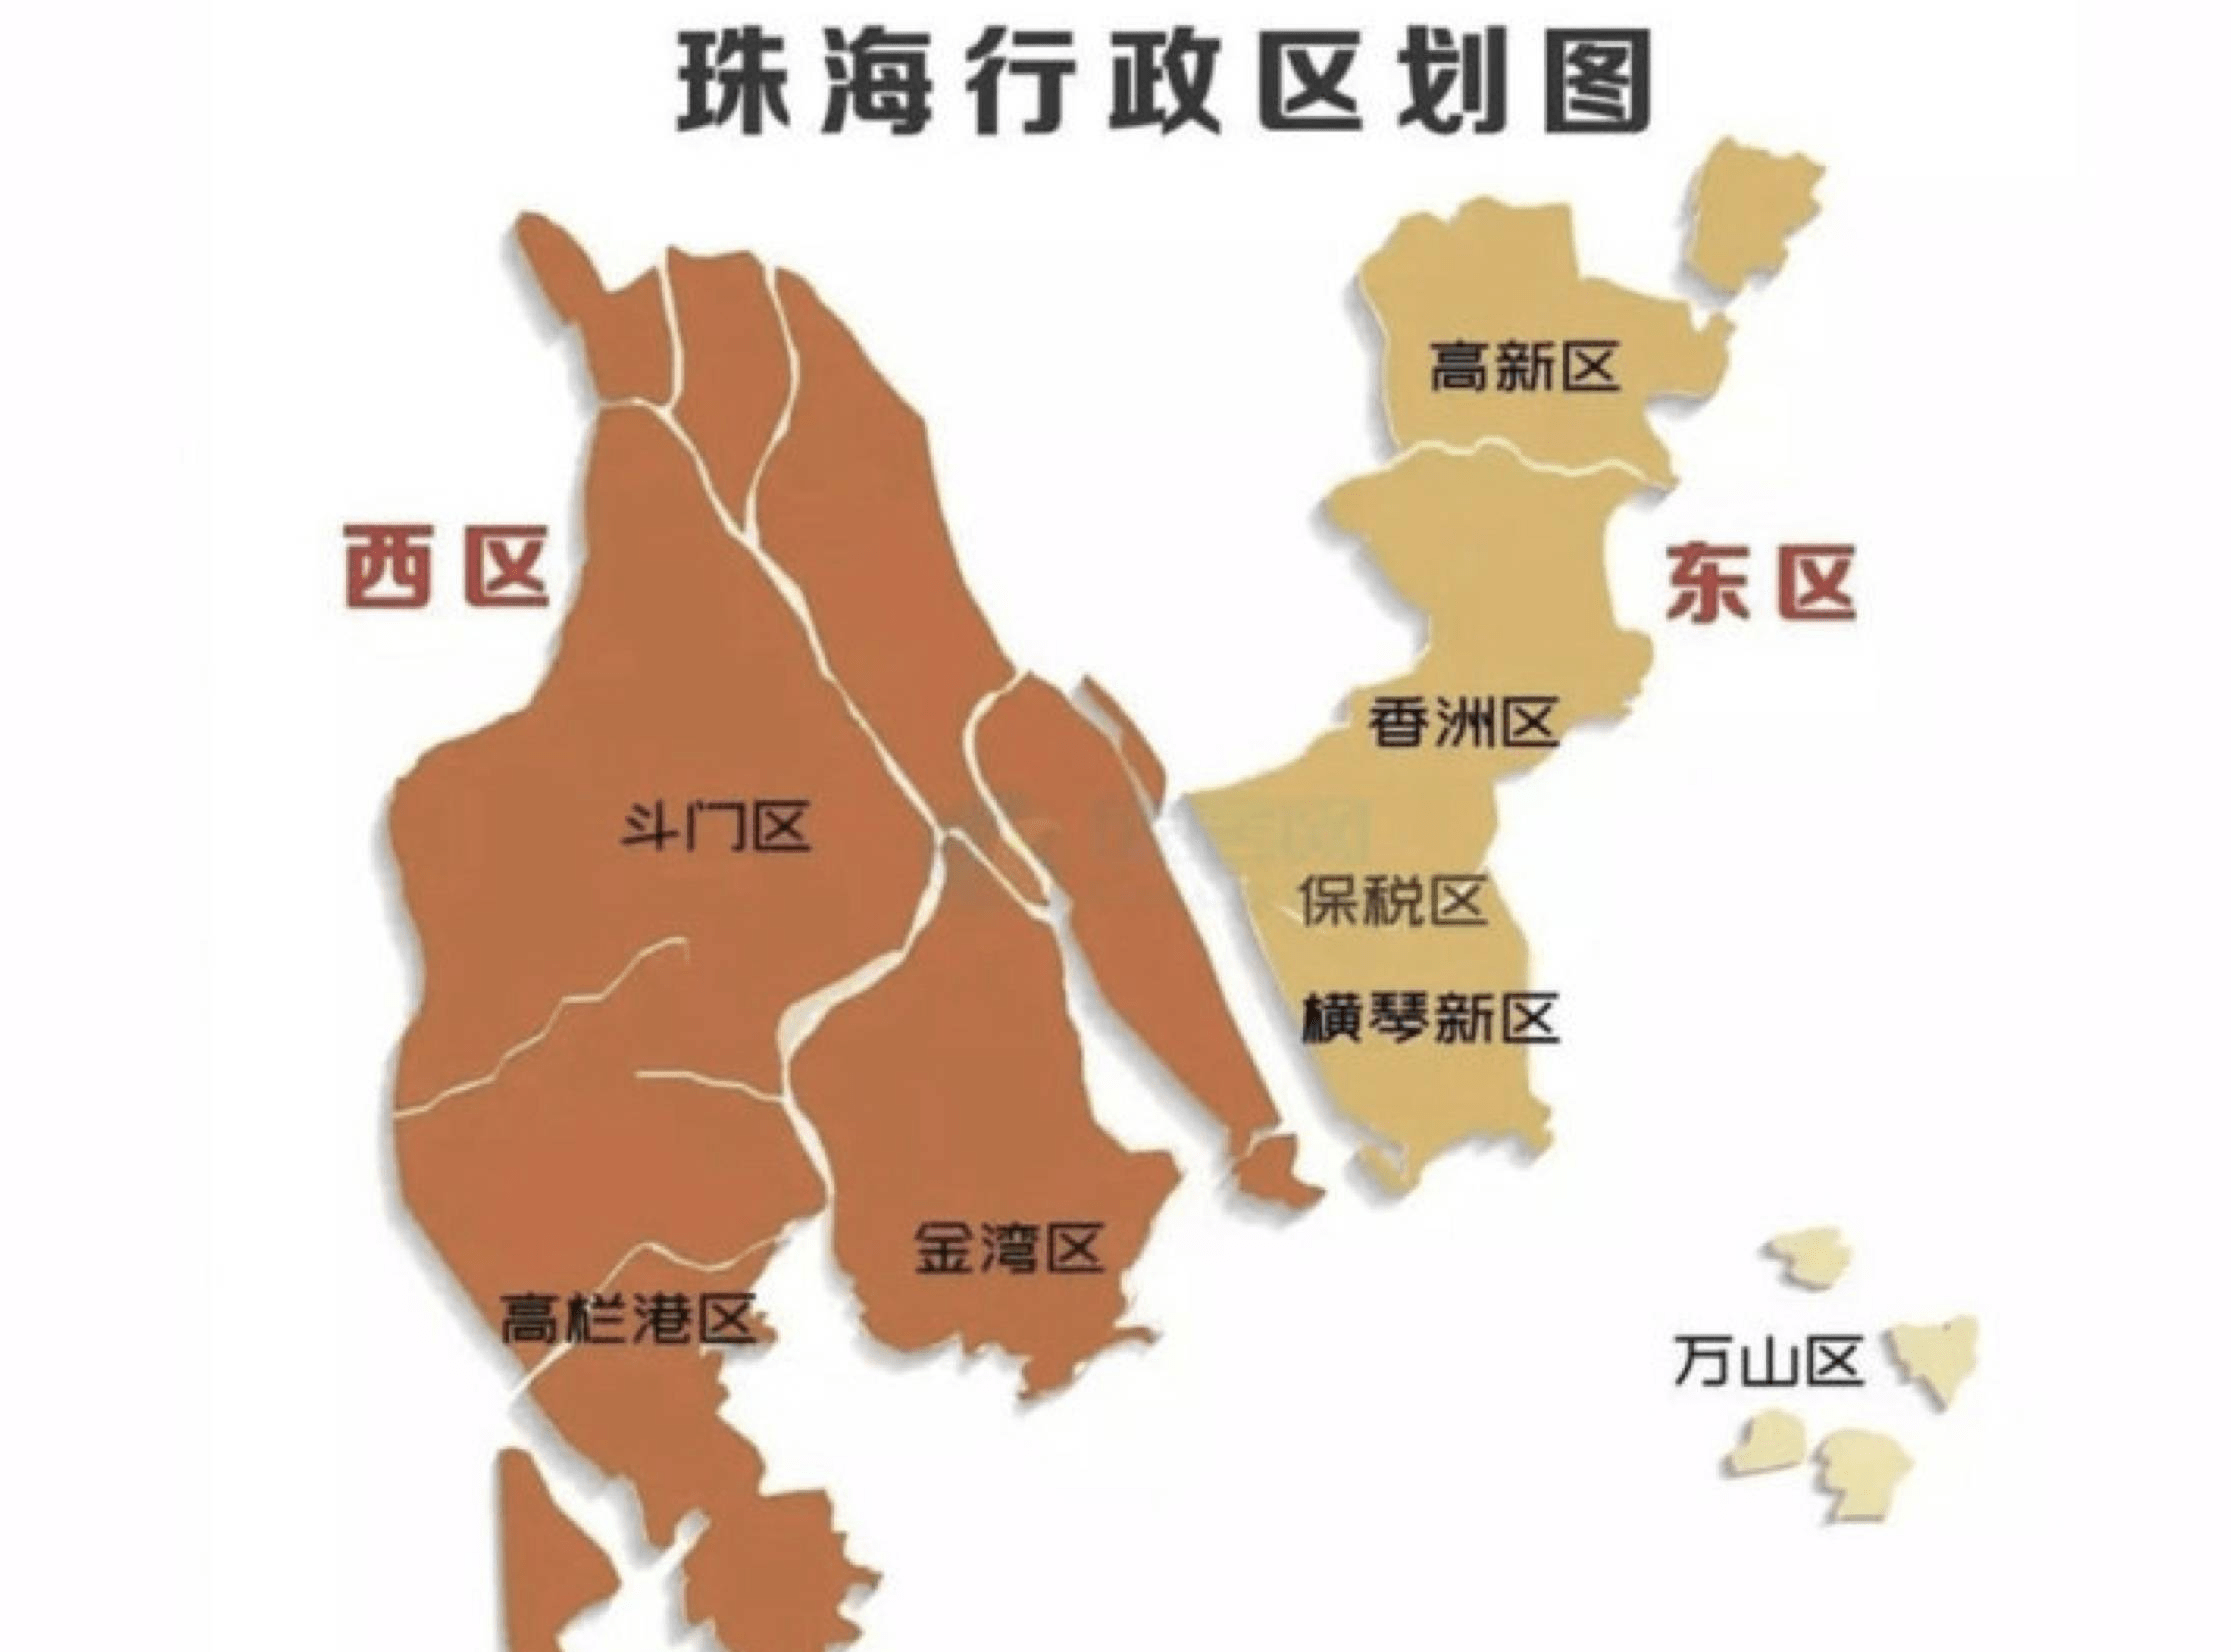 珠海市下辖3个行政区(香洲区,金湾区,斗门区),5个主要经济功能区